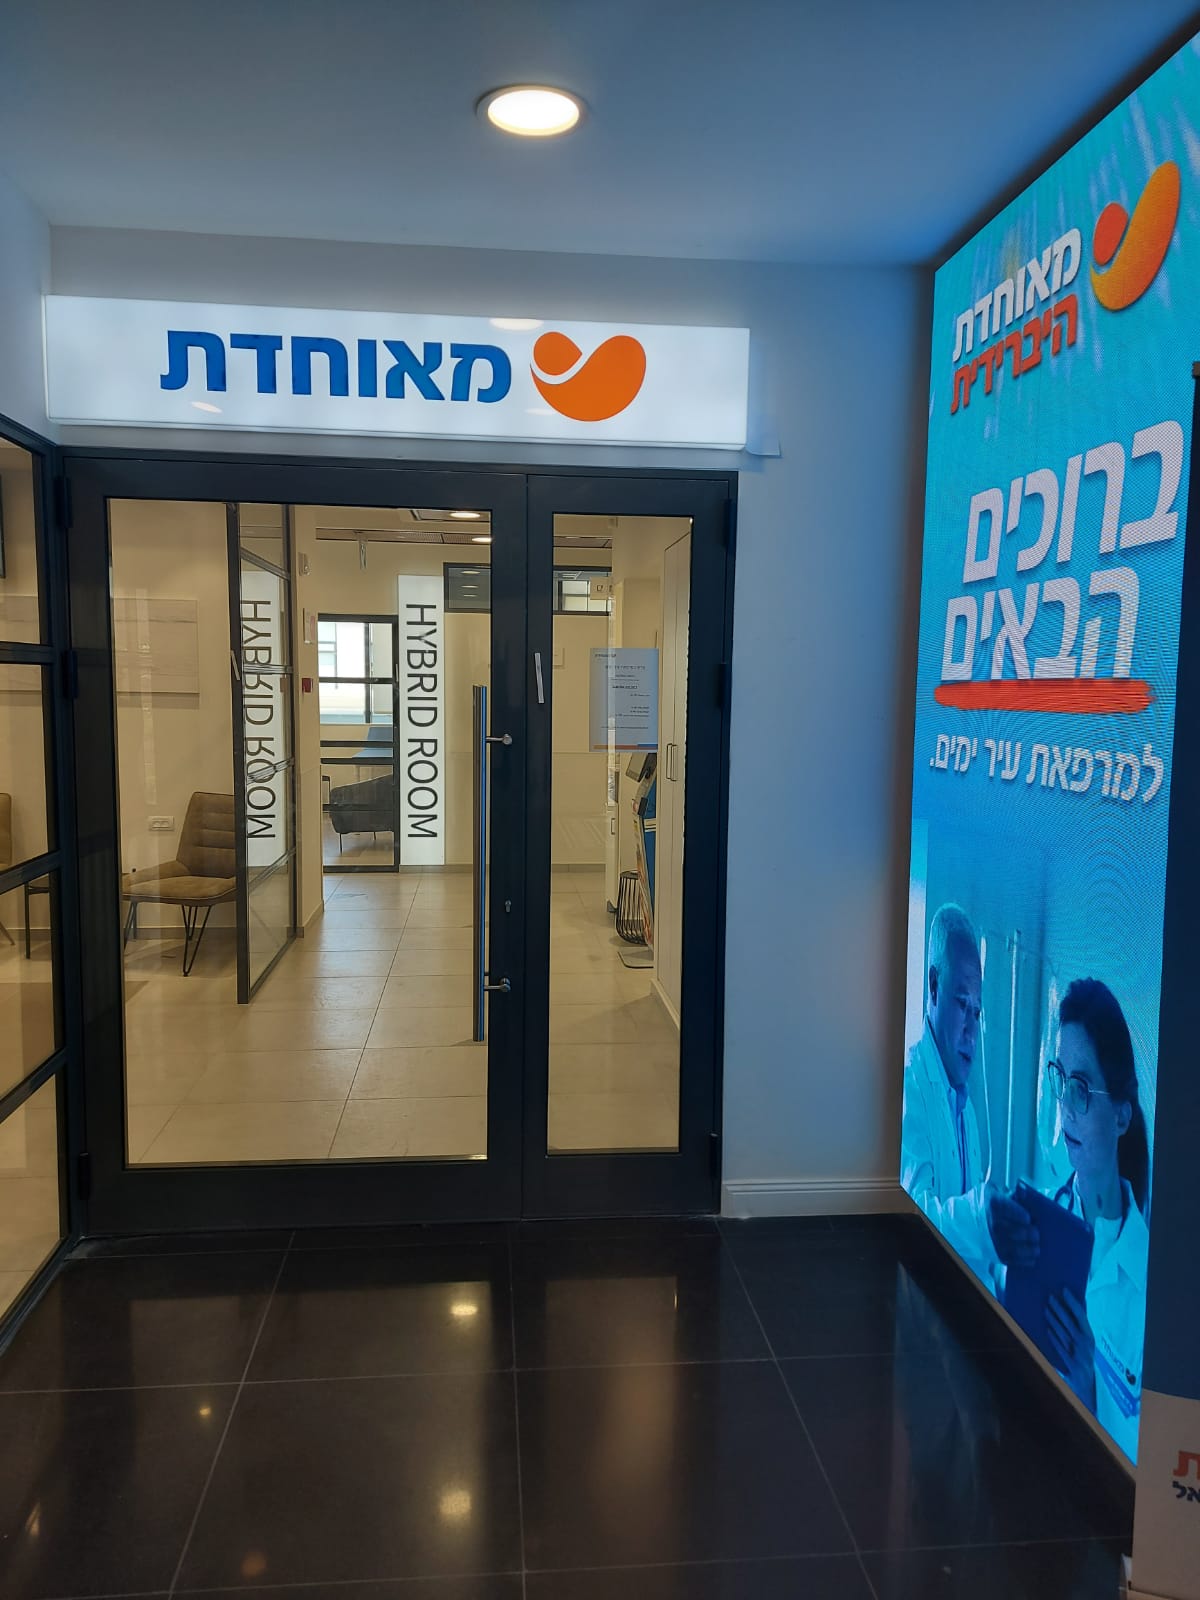 מאוחדת משיקה שירות ייחודי ללקוחותיה באזור המרכז, כולל בתל אביב, רמת גן וגבעתיים– סדנה דיגיטלית לגמילה מעישון.